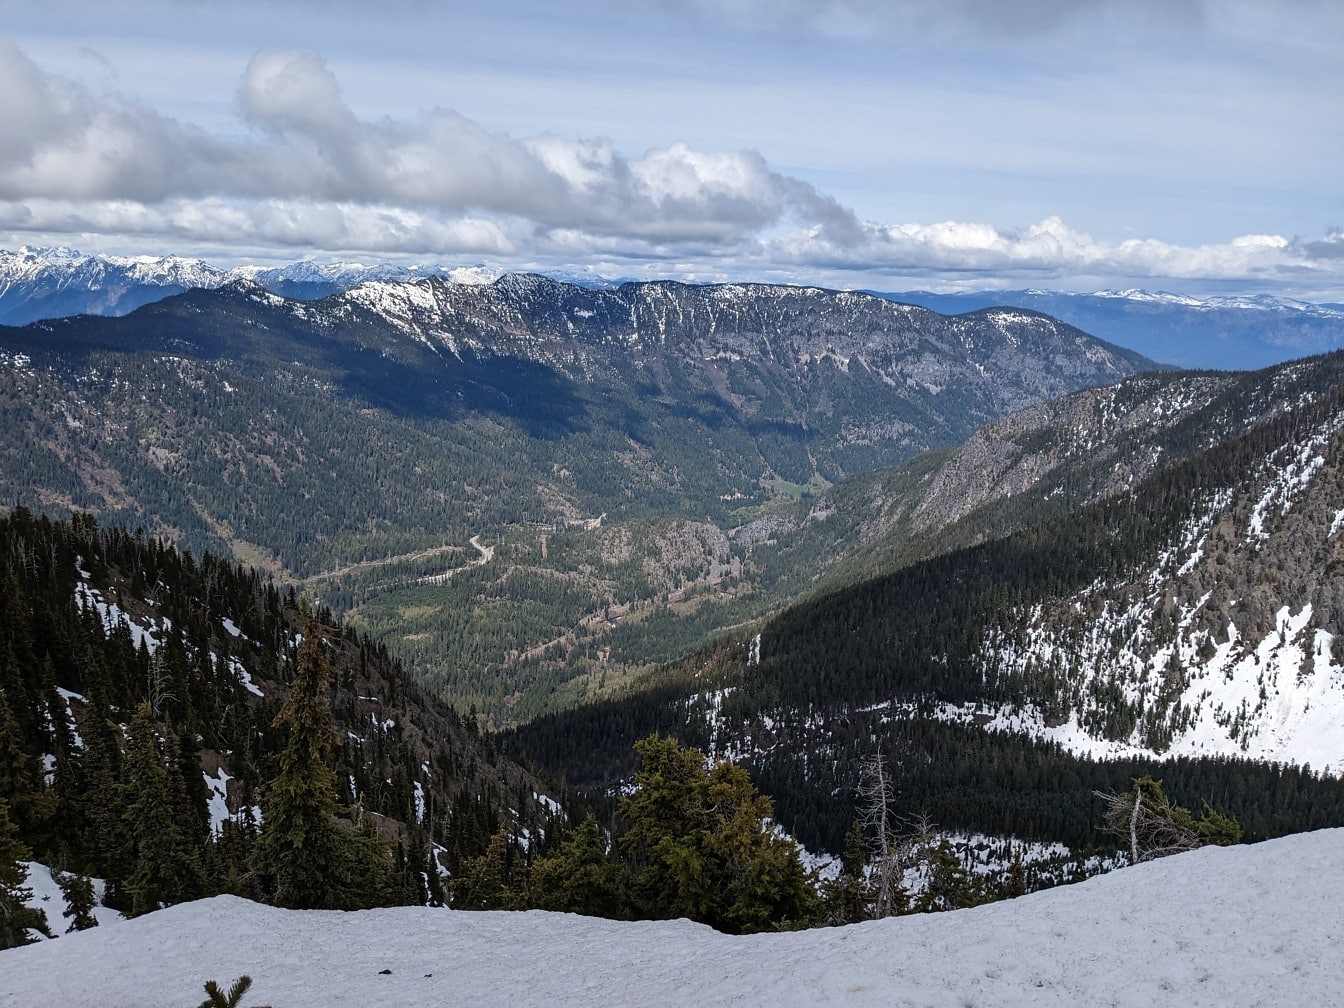 Vista panorâmica do topo das montanhas nevadas no parque nacional